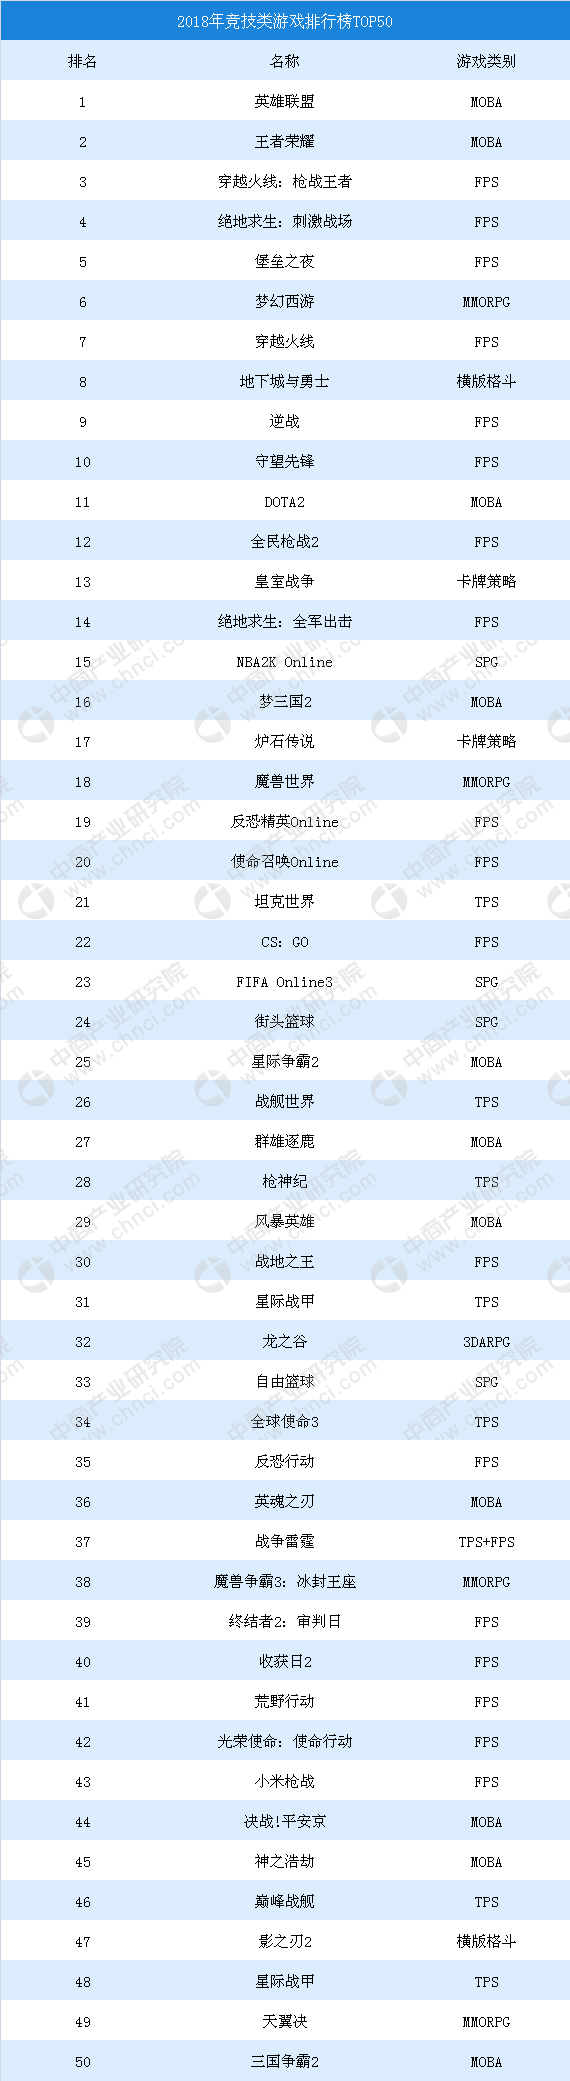 单机直播排行_腾讯游戏发布TOP20主播排行榜,PDD上榜了